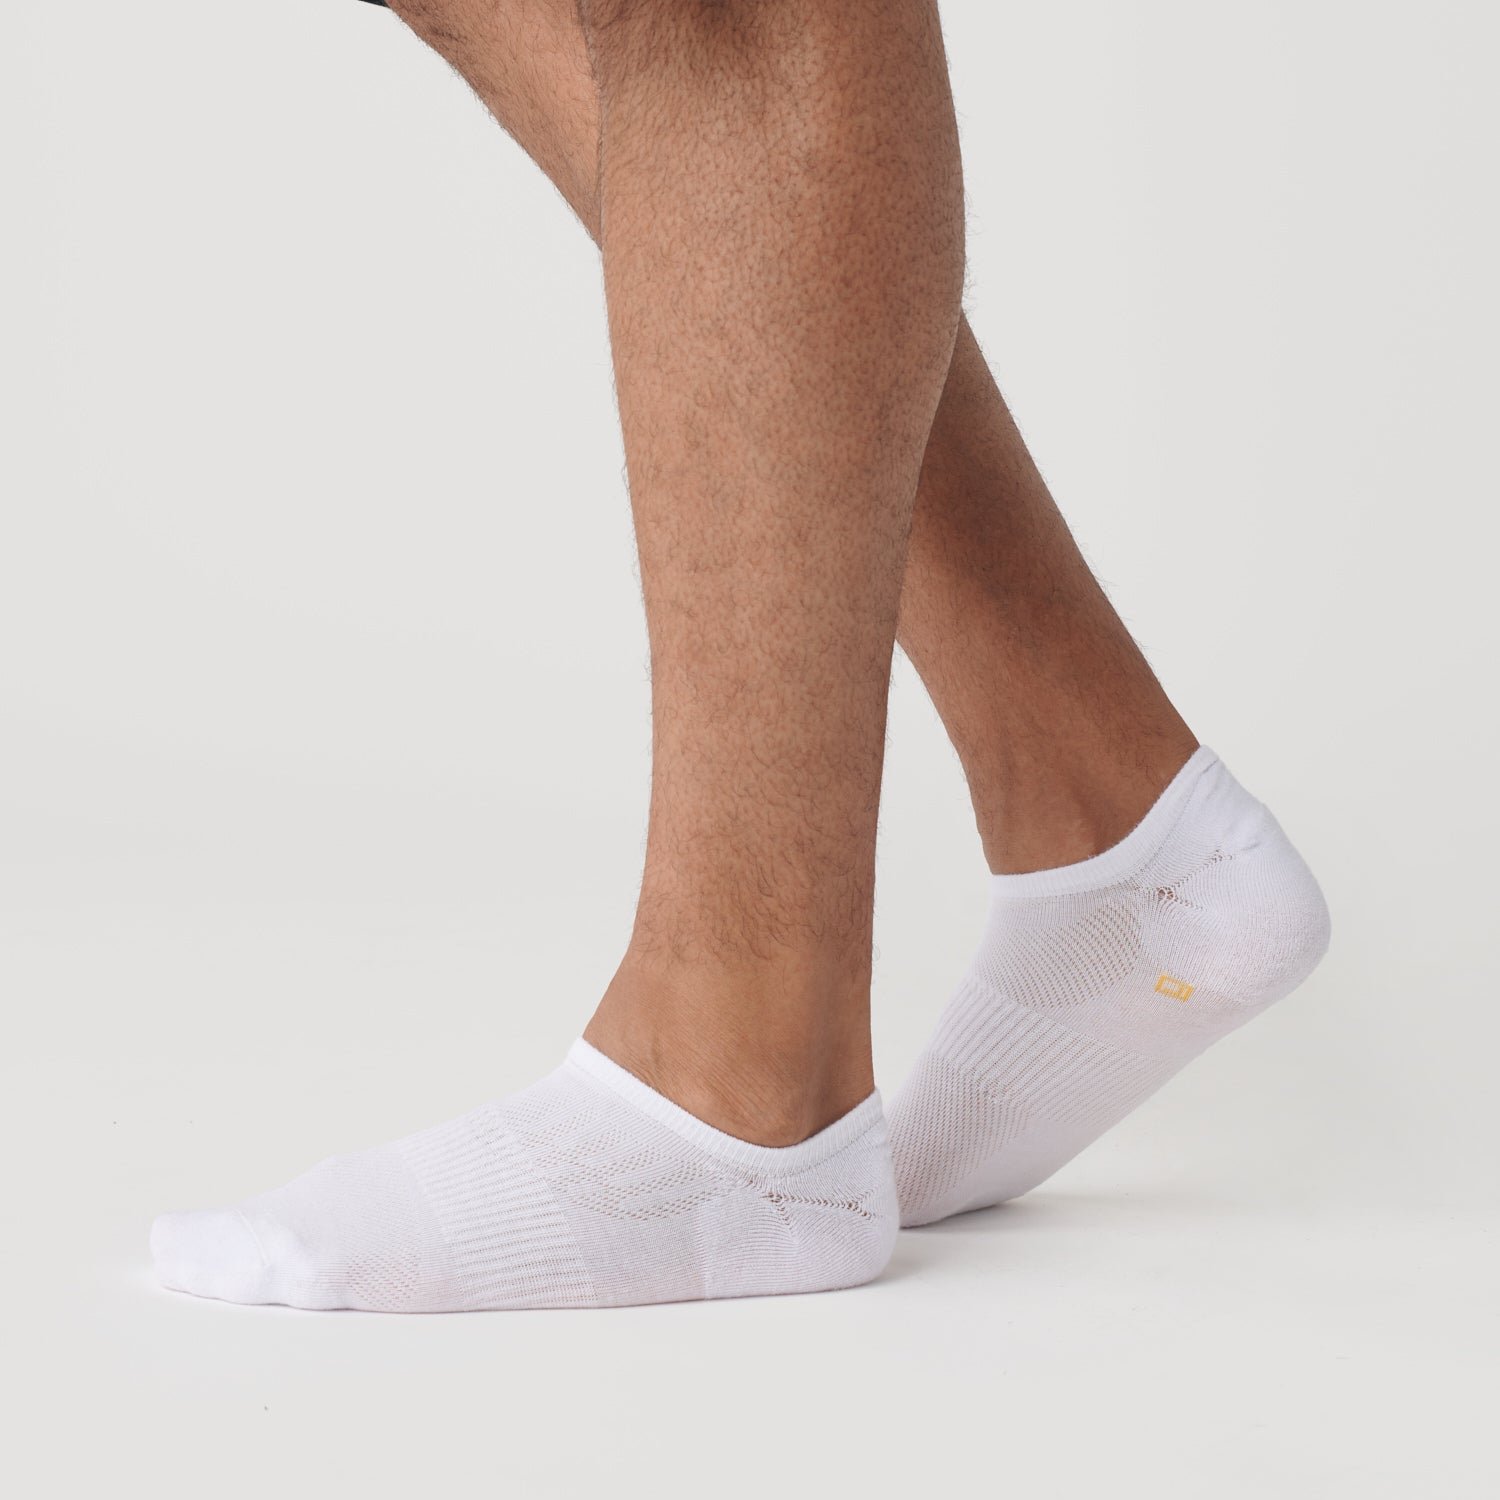 White No Show Socks 3-Pack